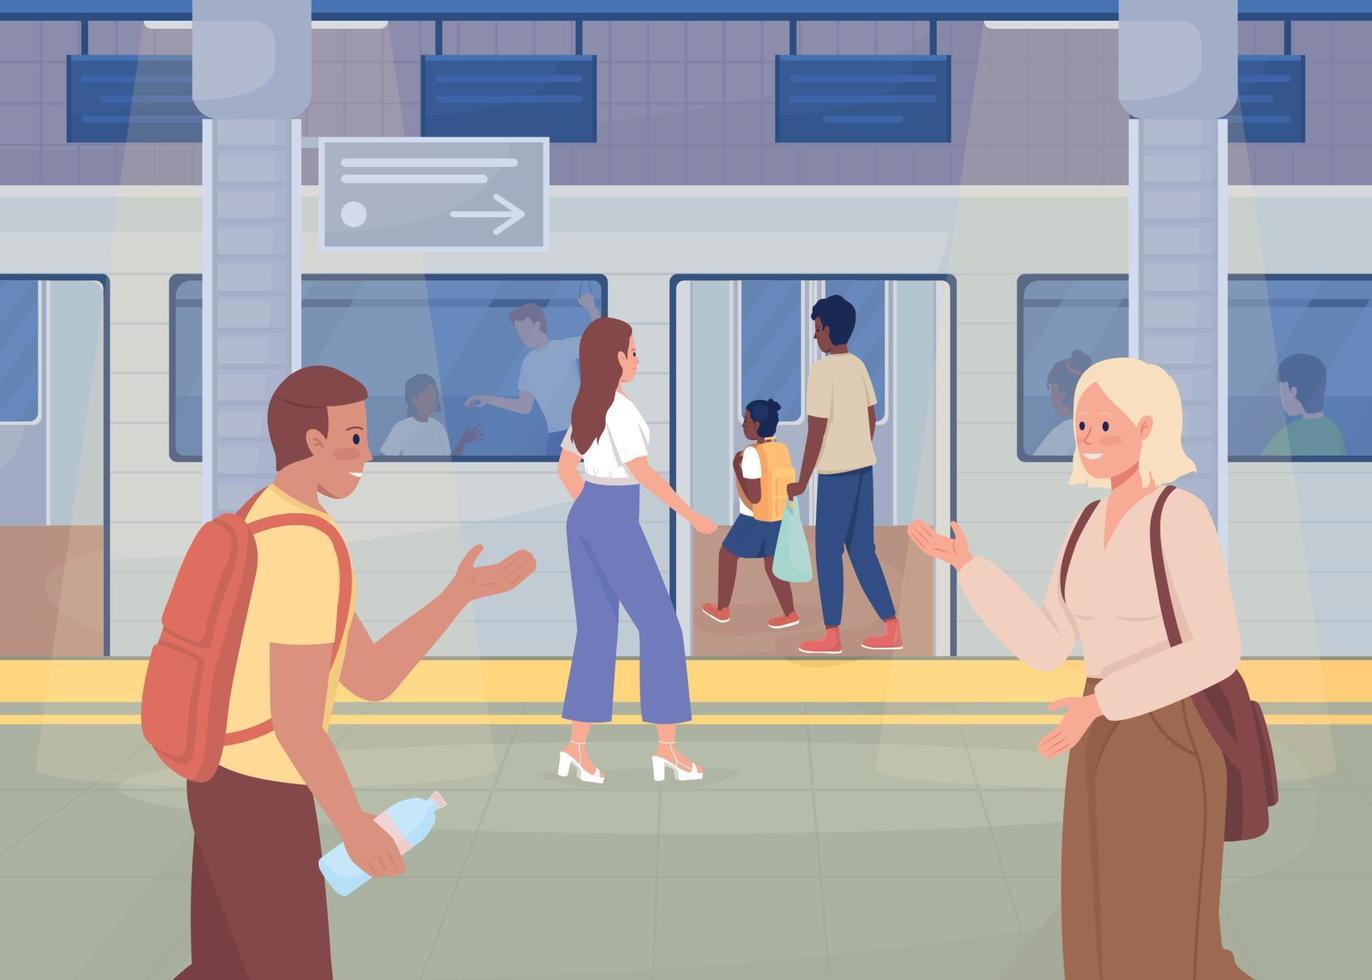 la vida cotidiana en la estación de metro ilustración de vector de color plano